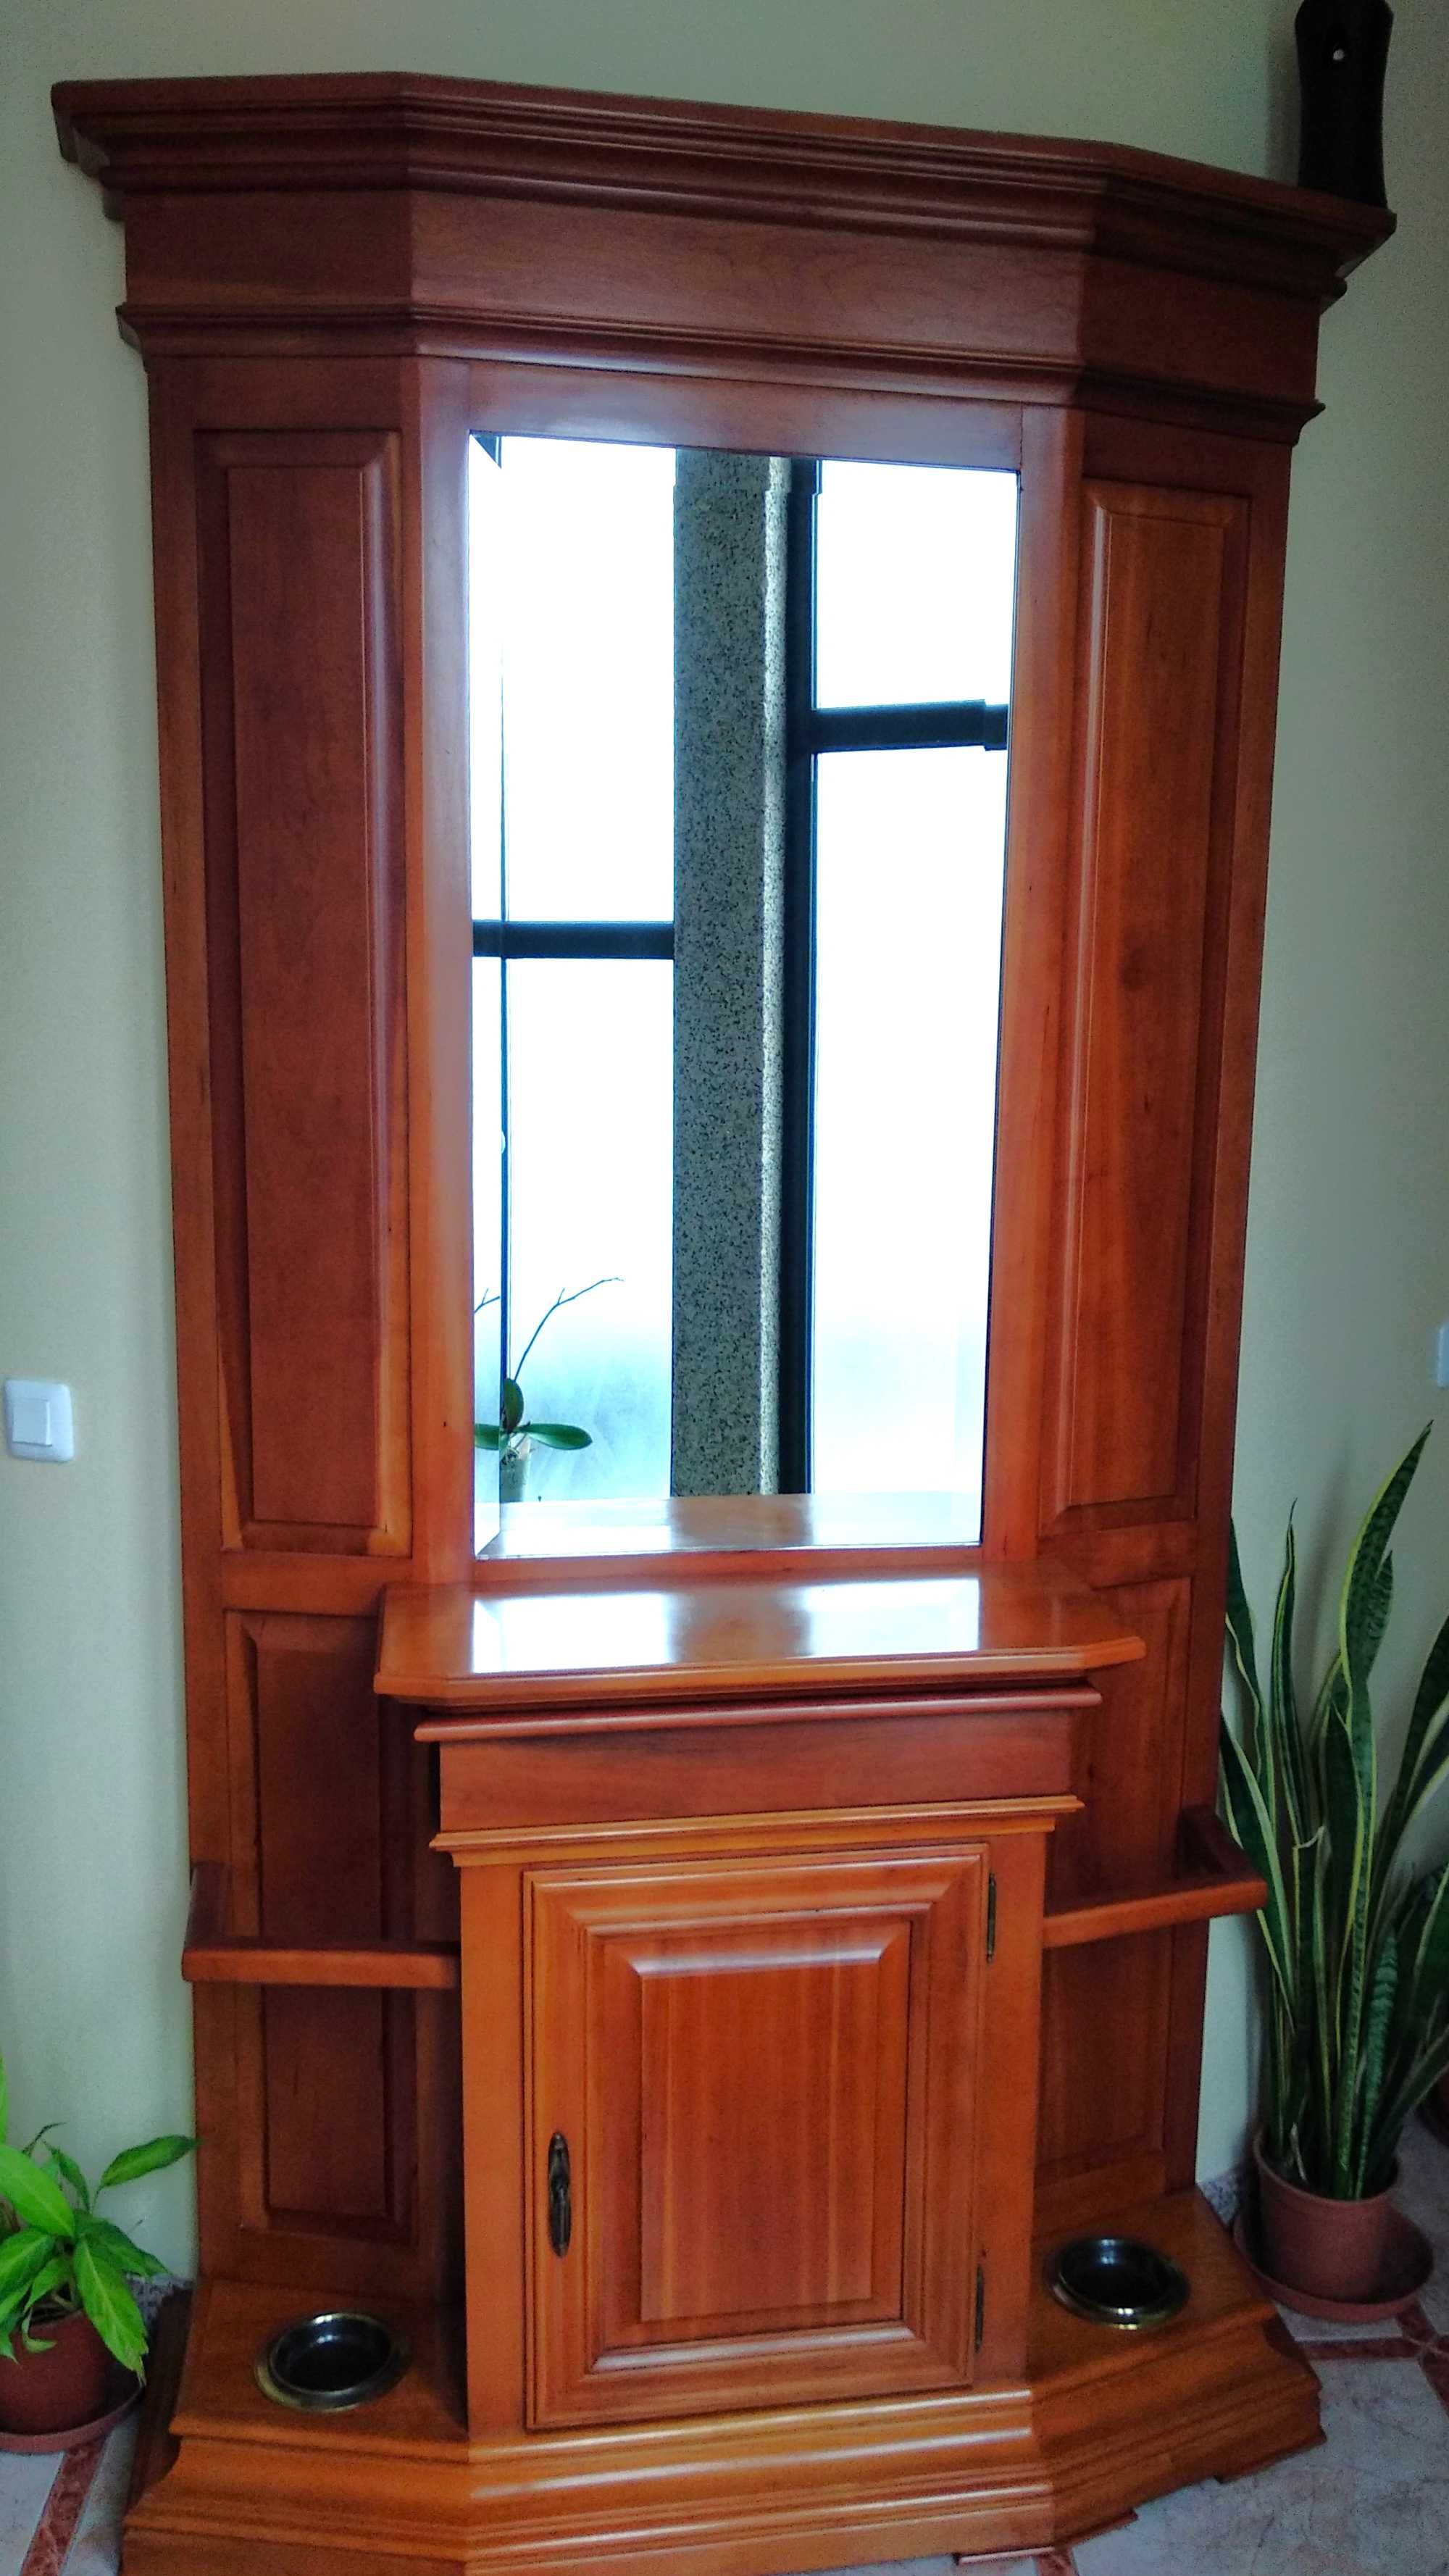 Móvel de Entrada (consola) em madeira Cerejeira com espelho